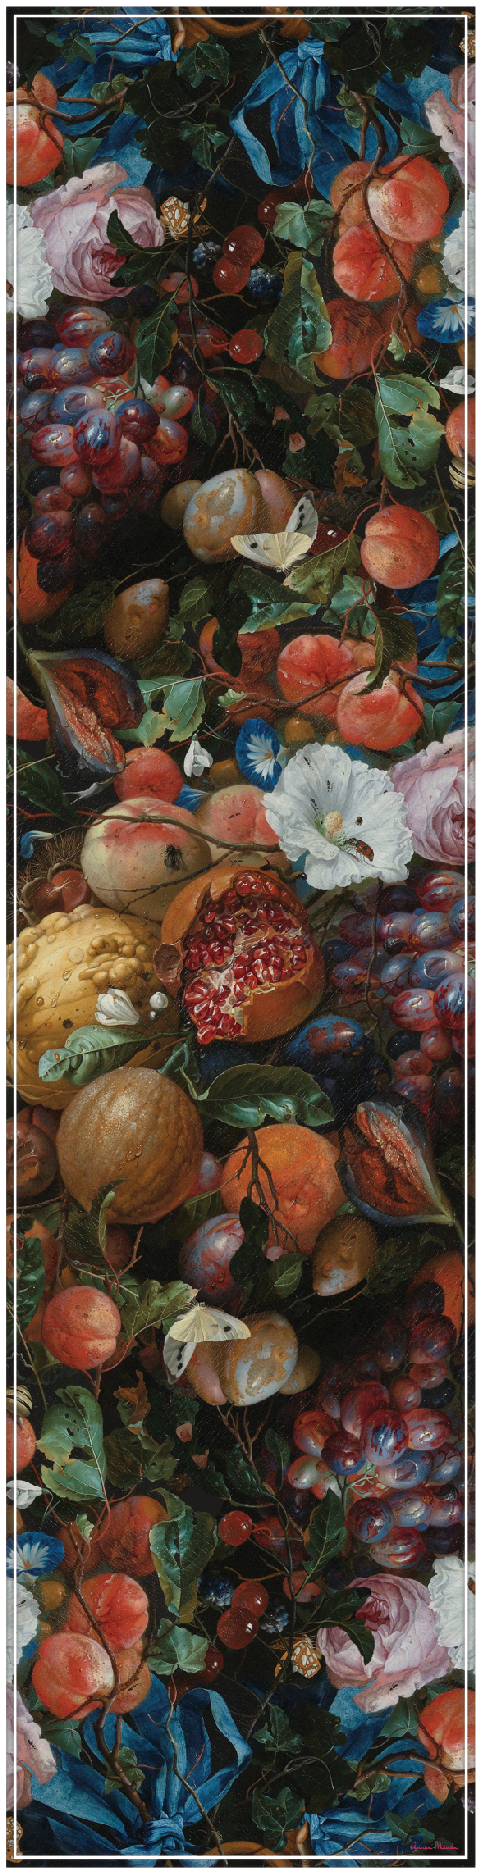 Vinyl Table Runner - 400mm x 1550mm - Art Collection - De Heem's Fruit